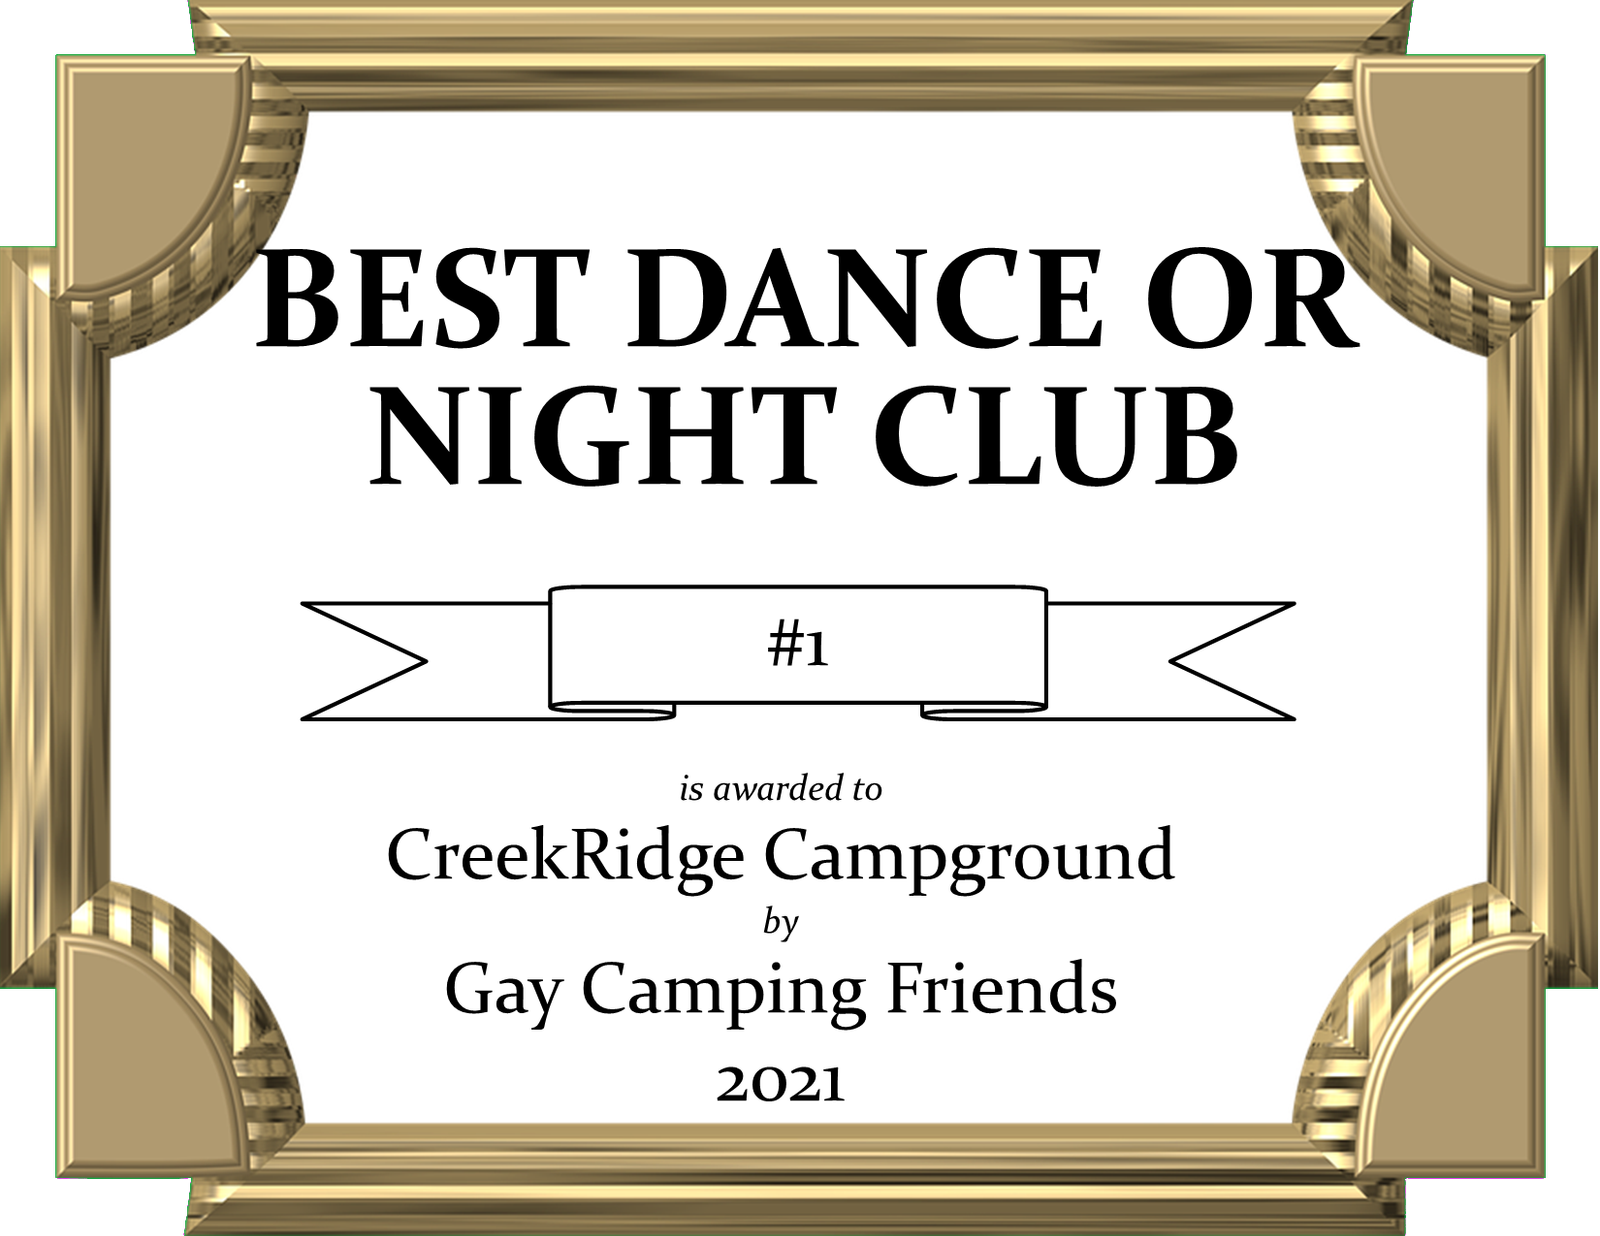 2021 Gay Camping Friends Award article